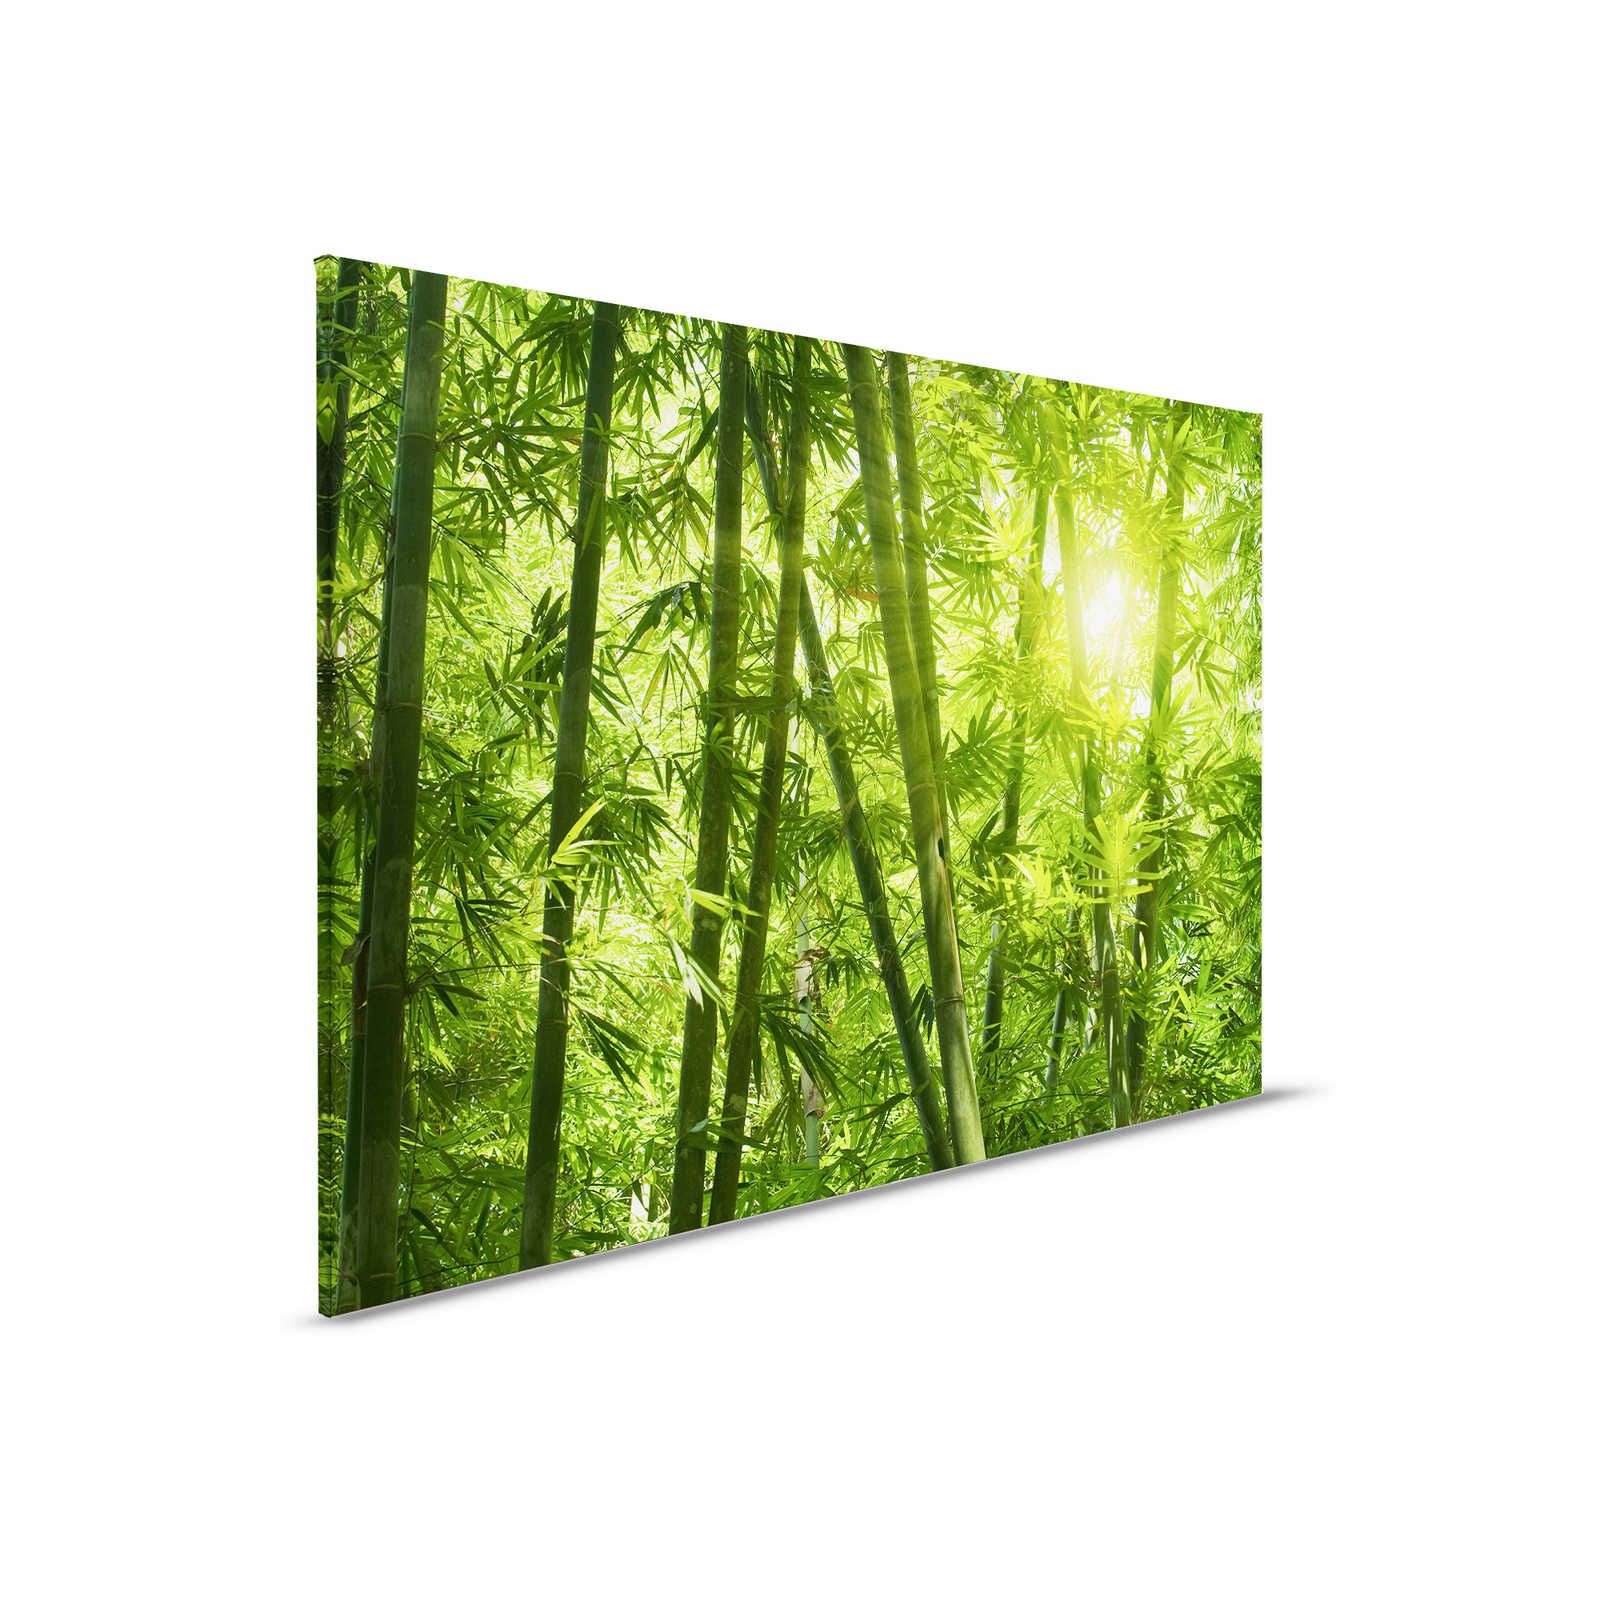         Leinwandbild Bambus und Blätter – 0,90 m x 0,60 m
    